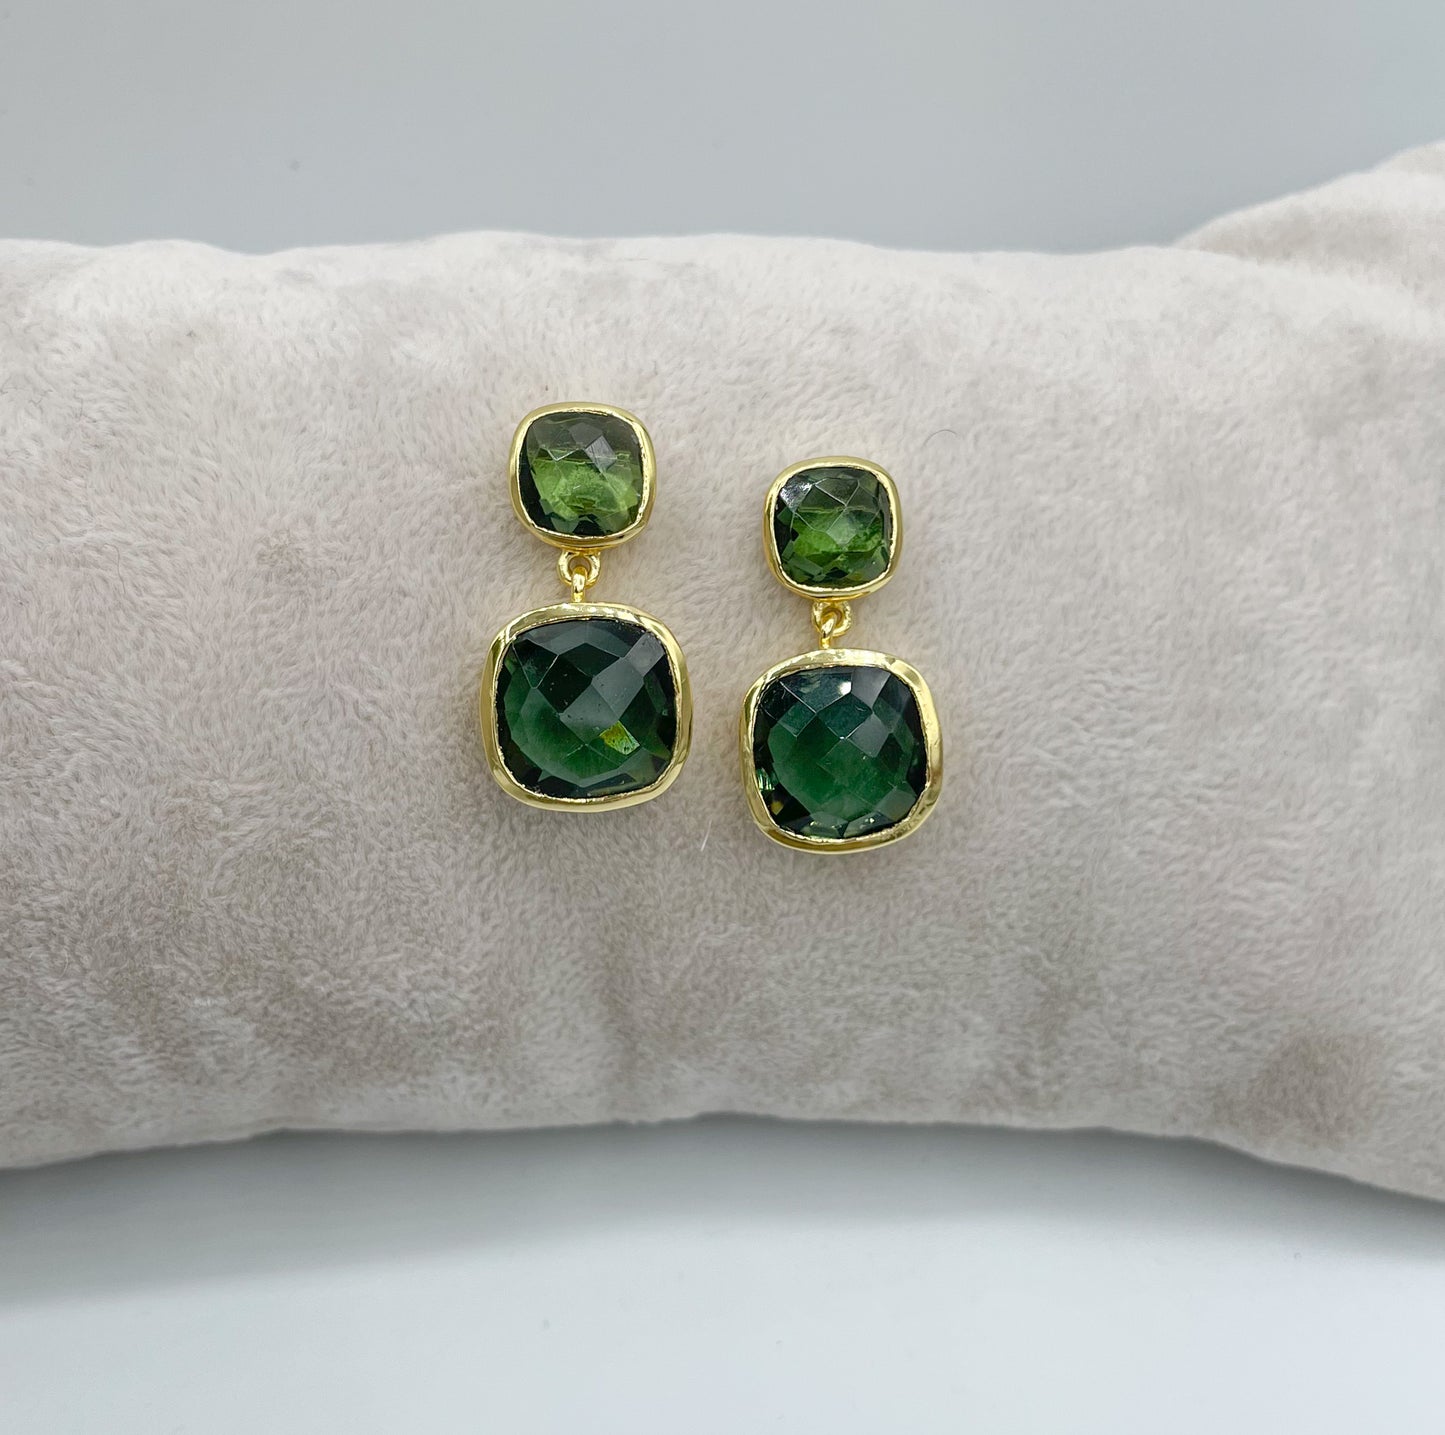 Gold cushion cut double drop green tourmaline earrings